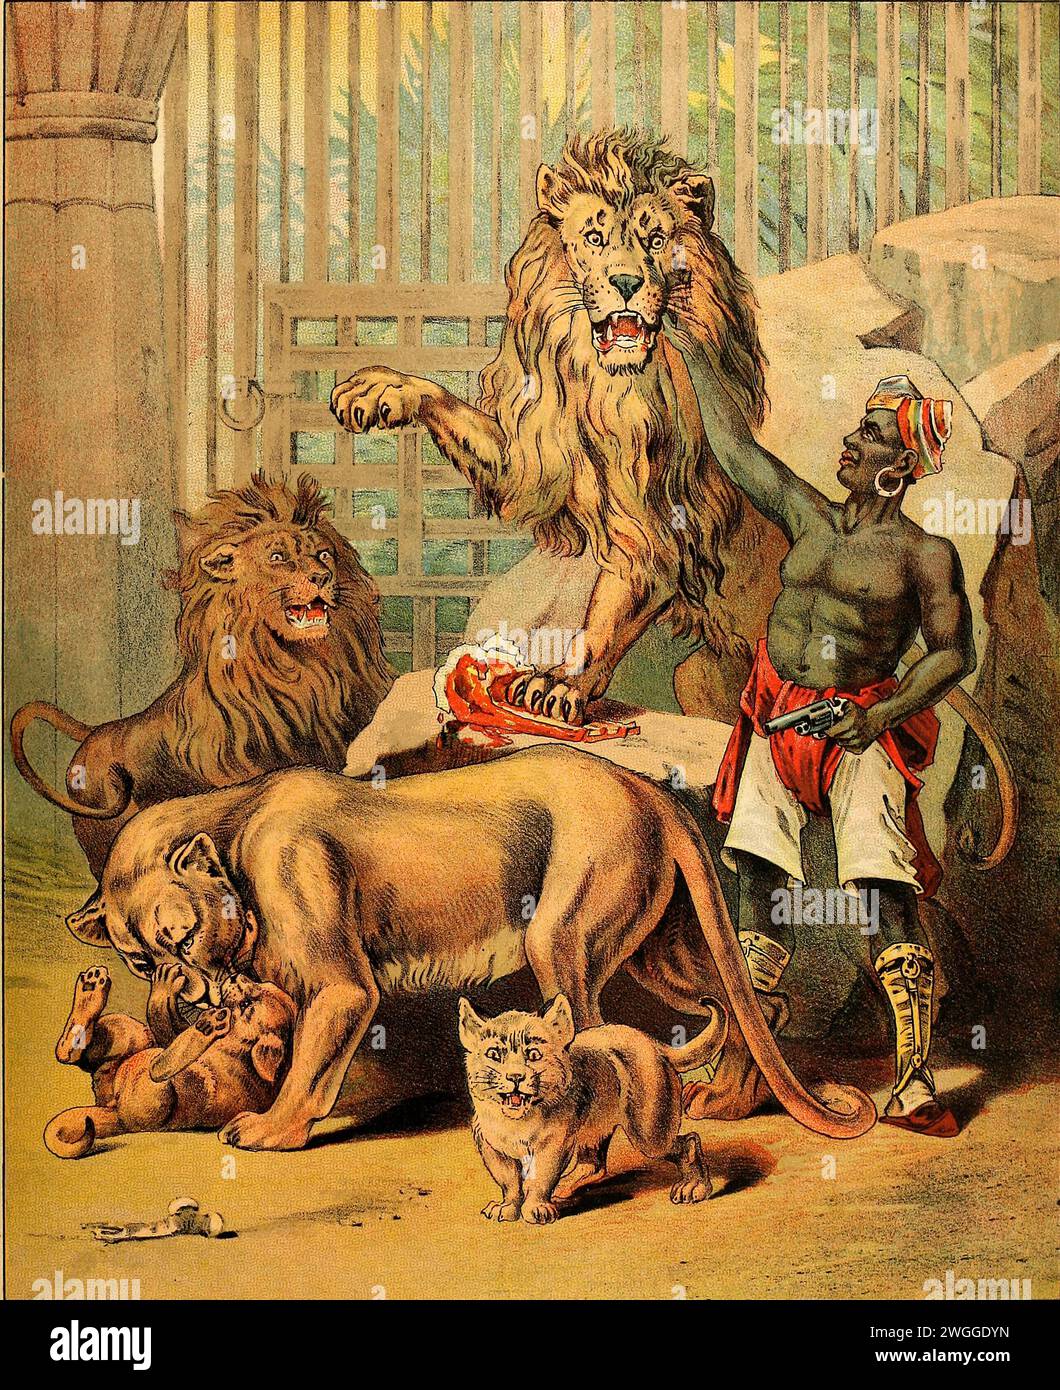 Barnum's Menagerie 1888 - Tamer des lions Banque D'Images